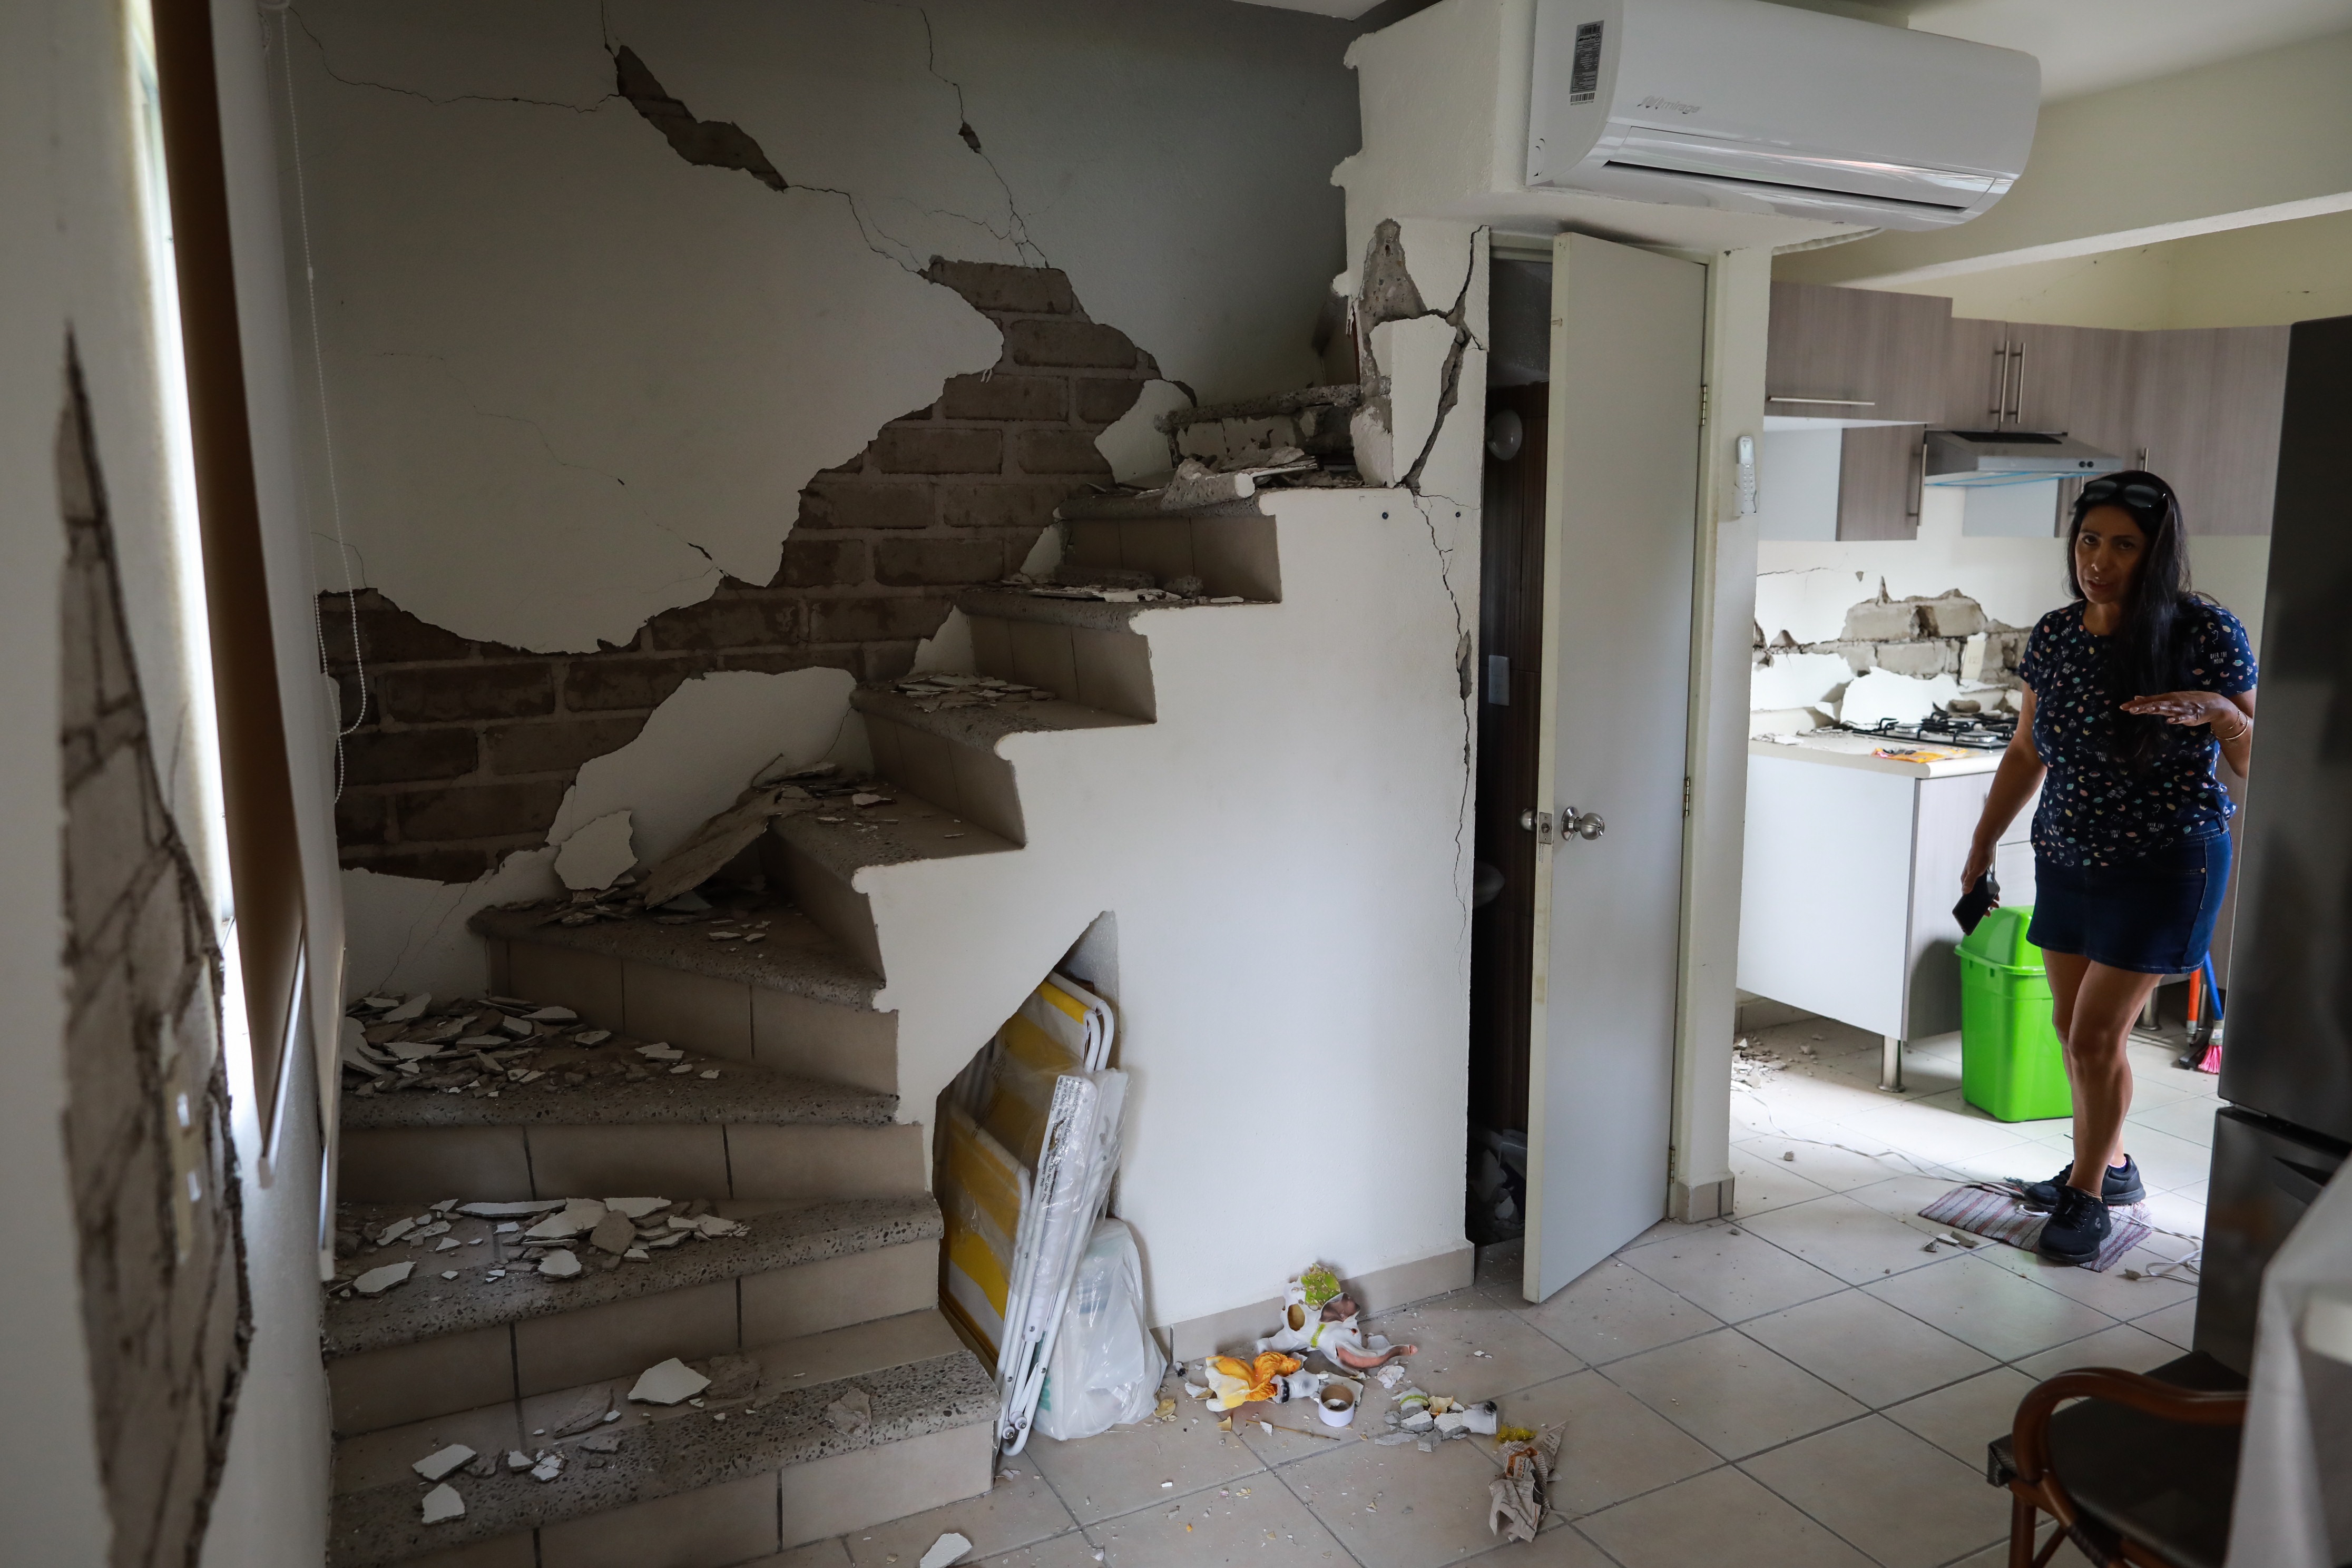 Daños al interior de una vivienda por el sismo de 7.1 en Guerrero. (Foto: Archivo/EFE)
